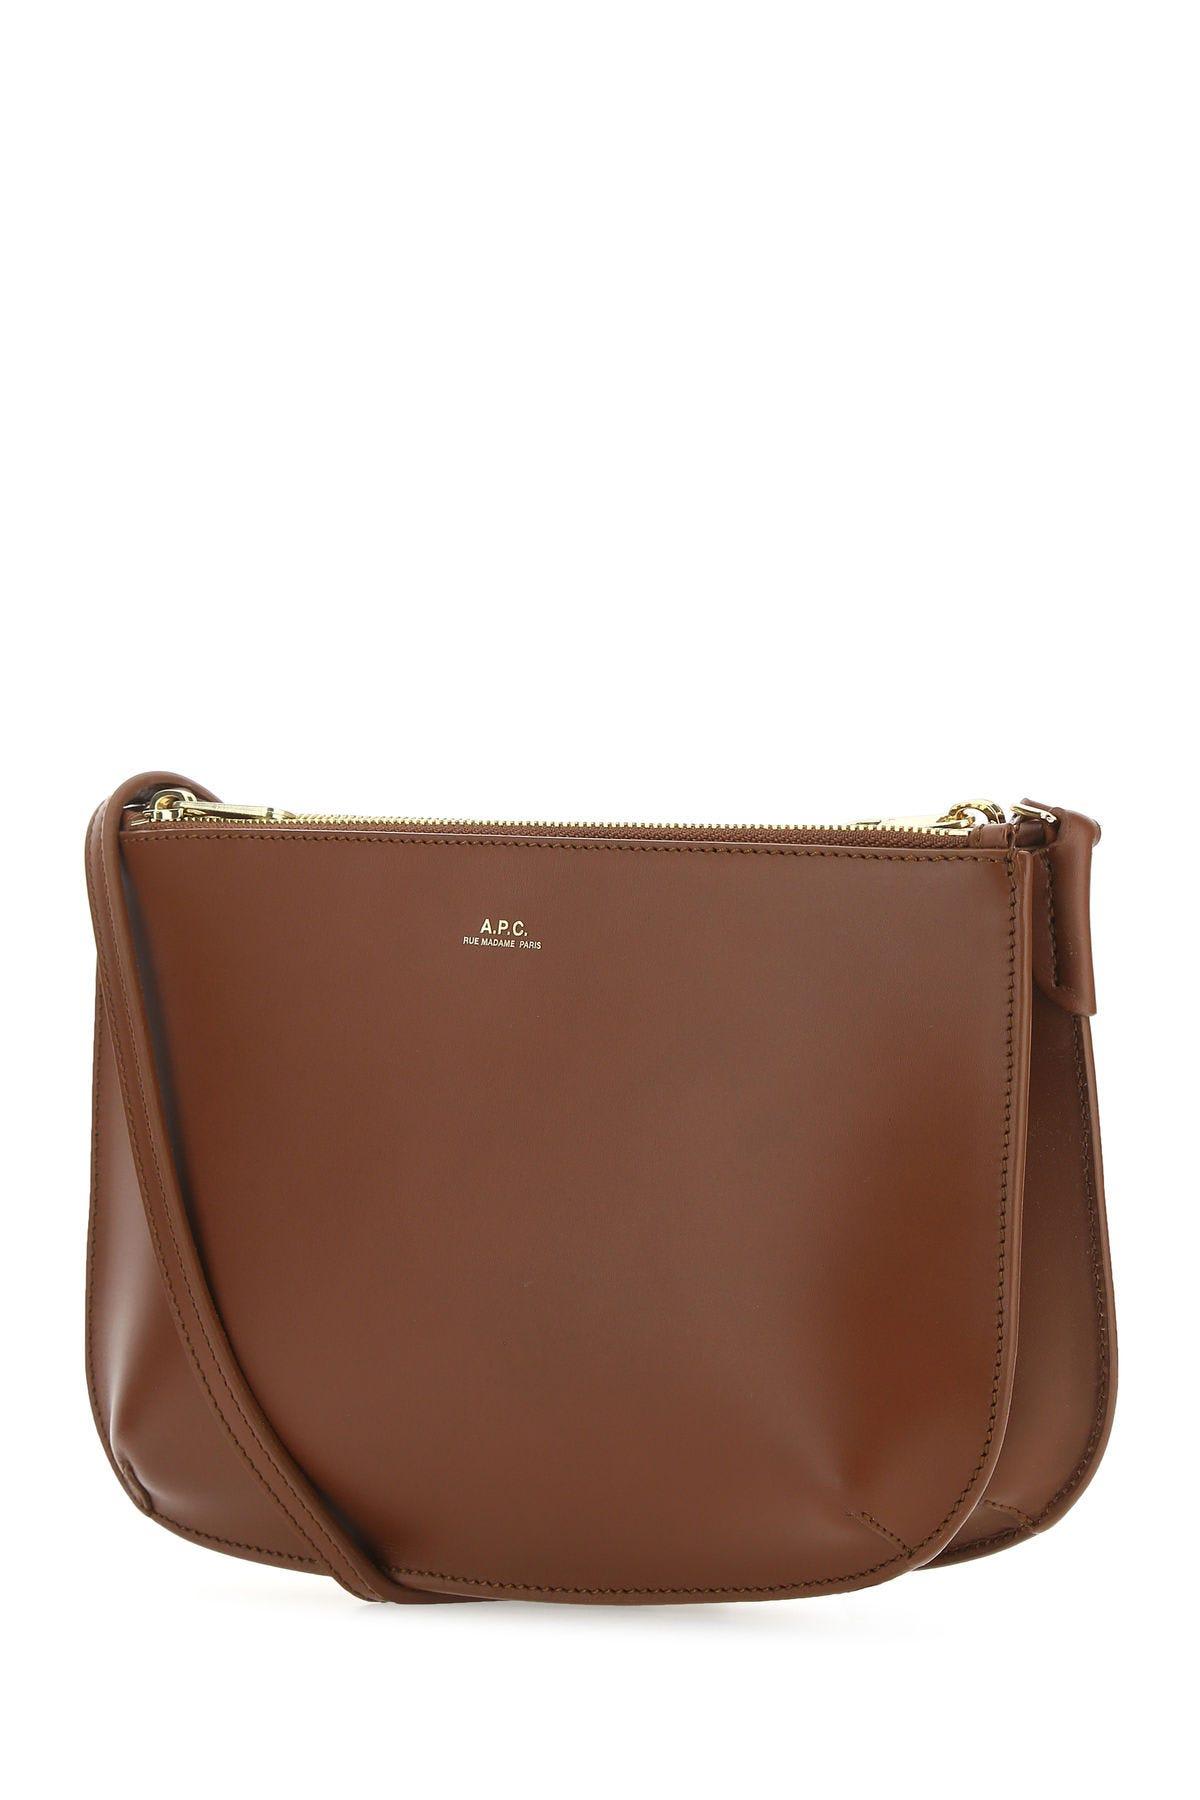 Shop Apc Brown Leather Sarah Crossbody Bag